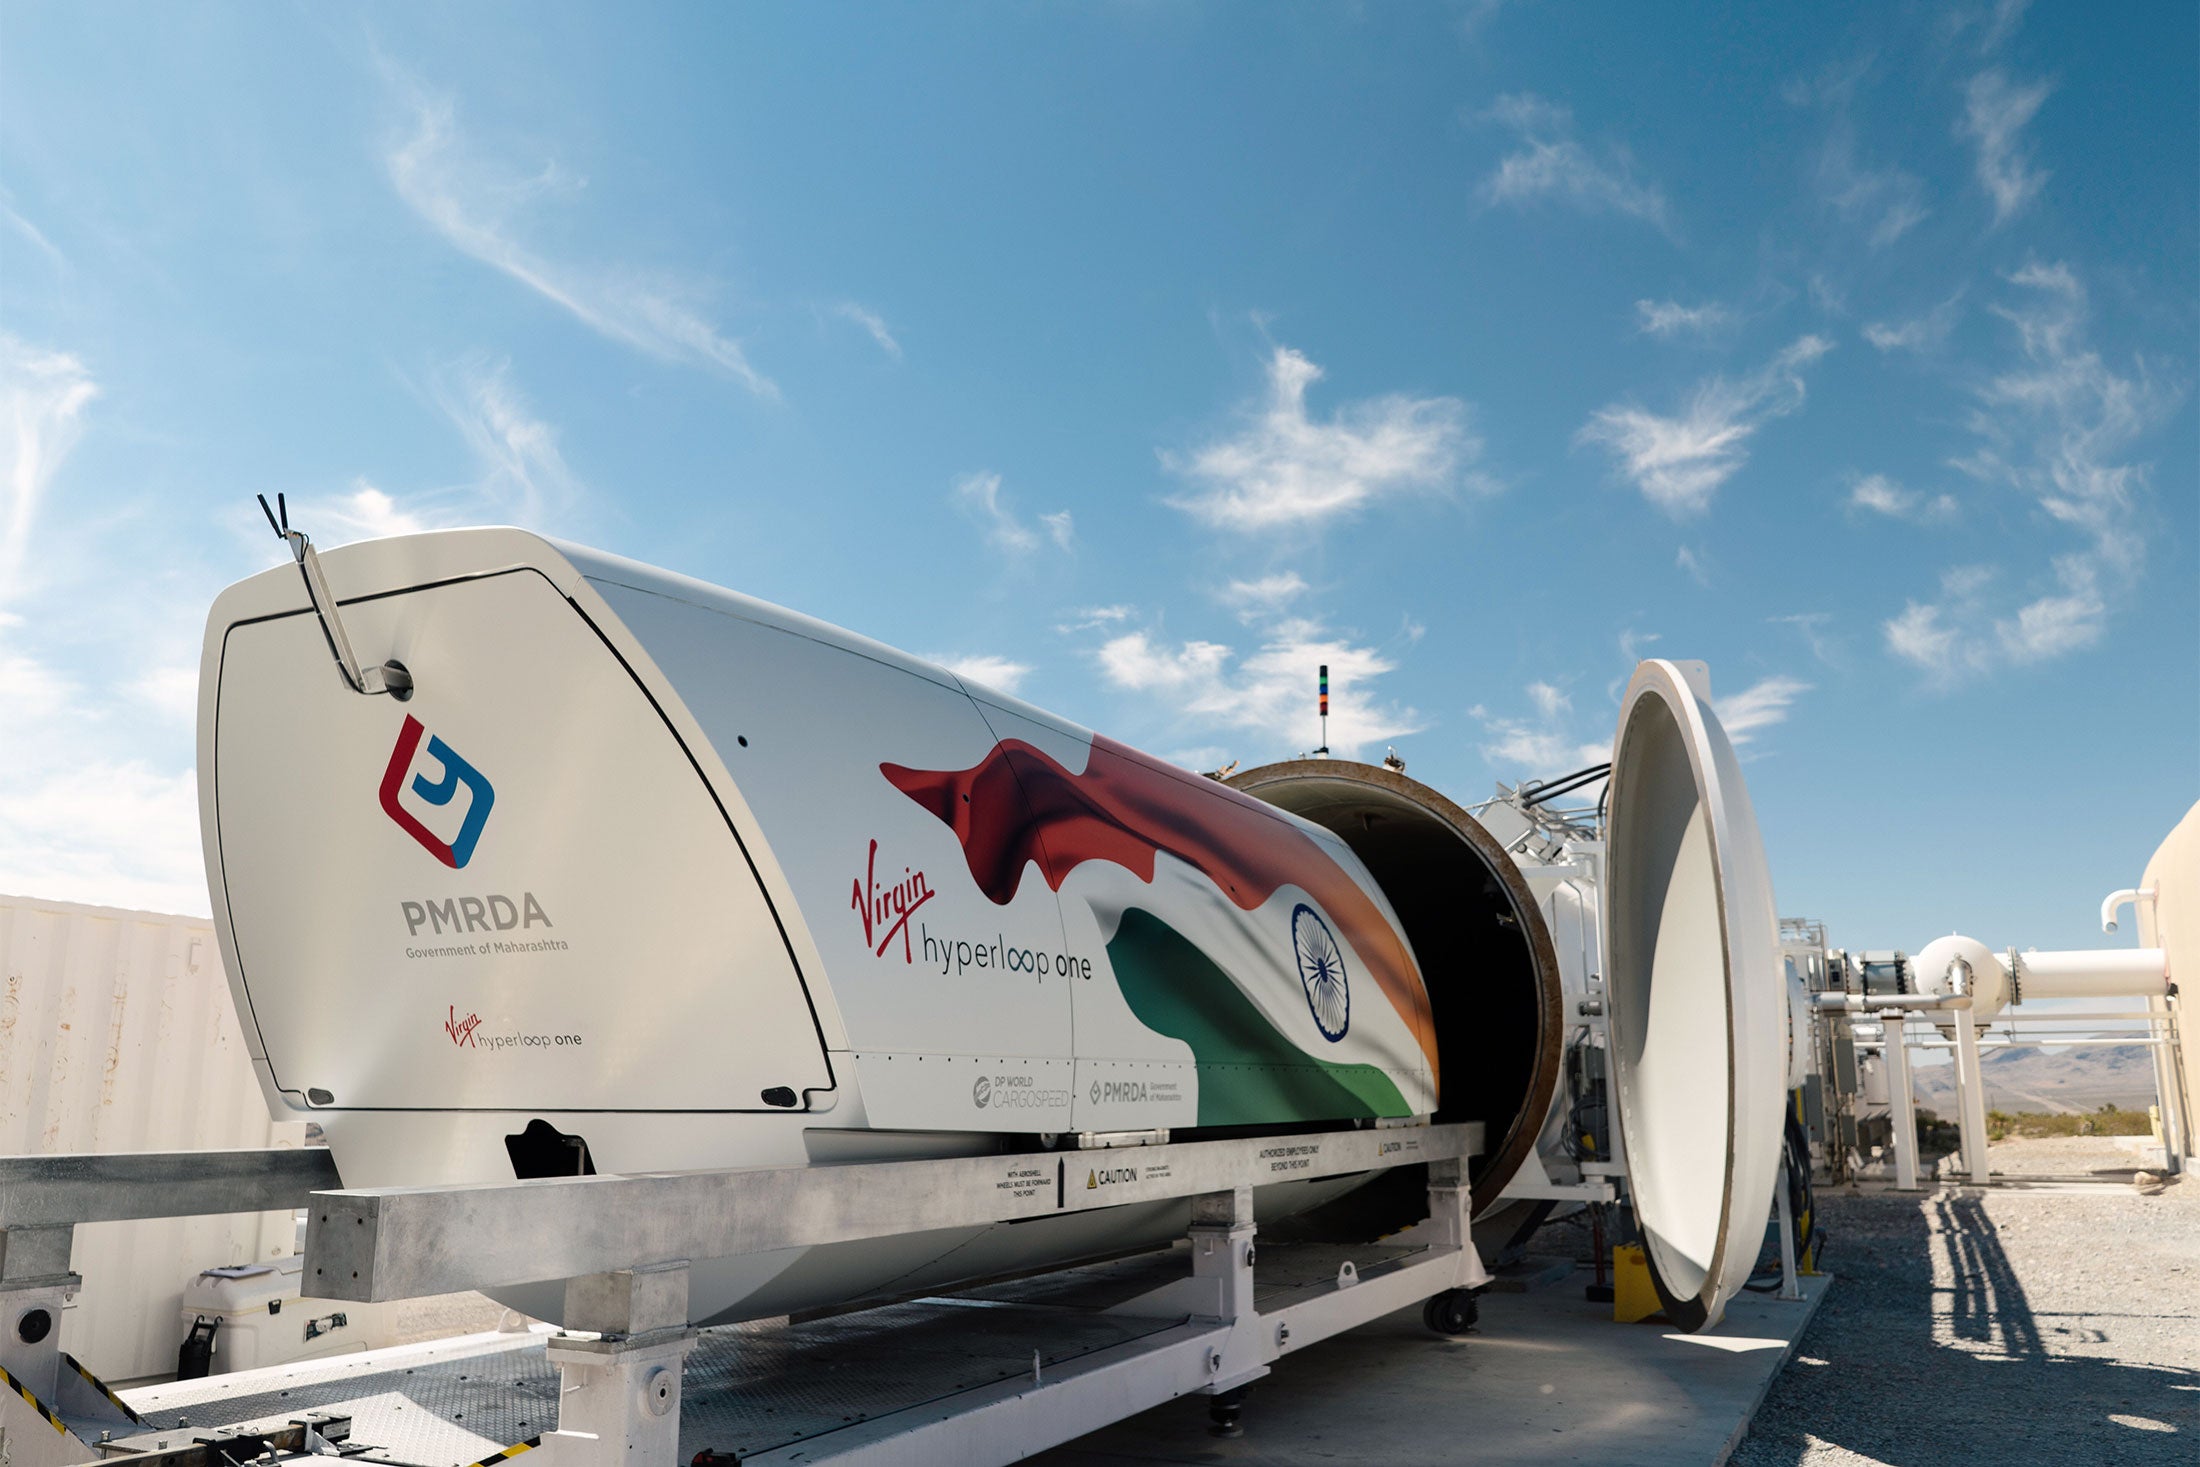 A pod from Virgin Hyperloop One.